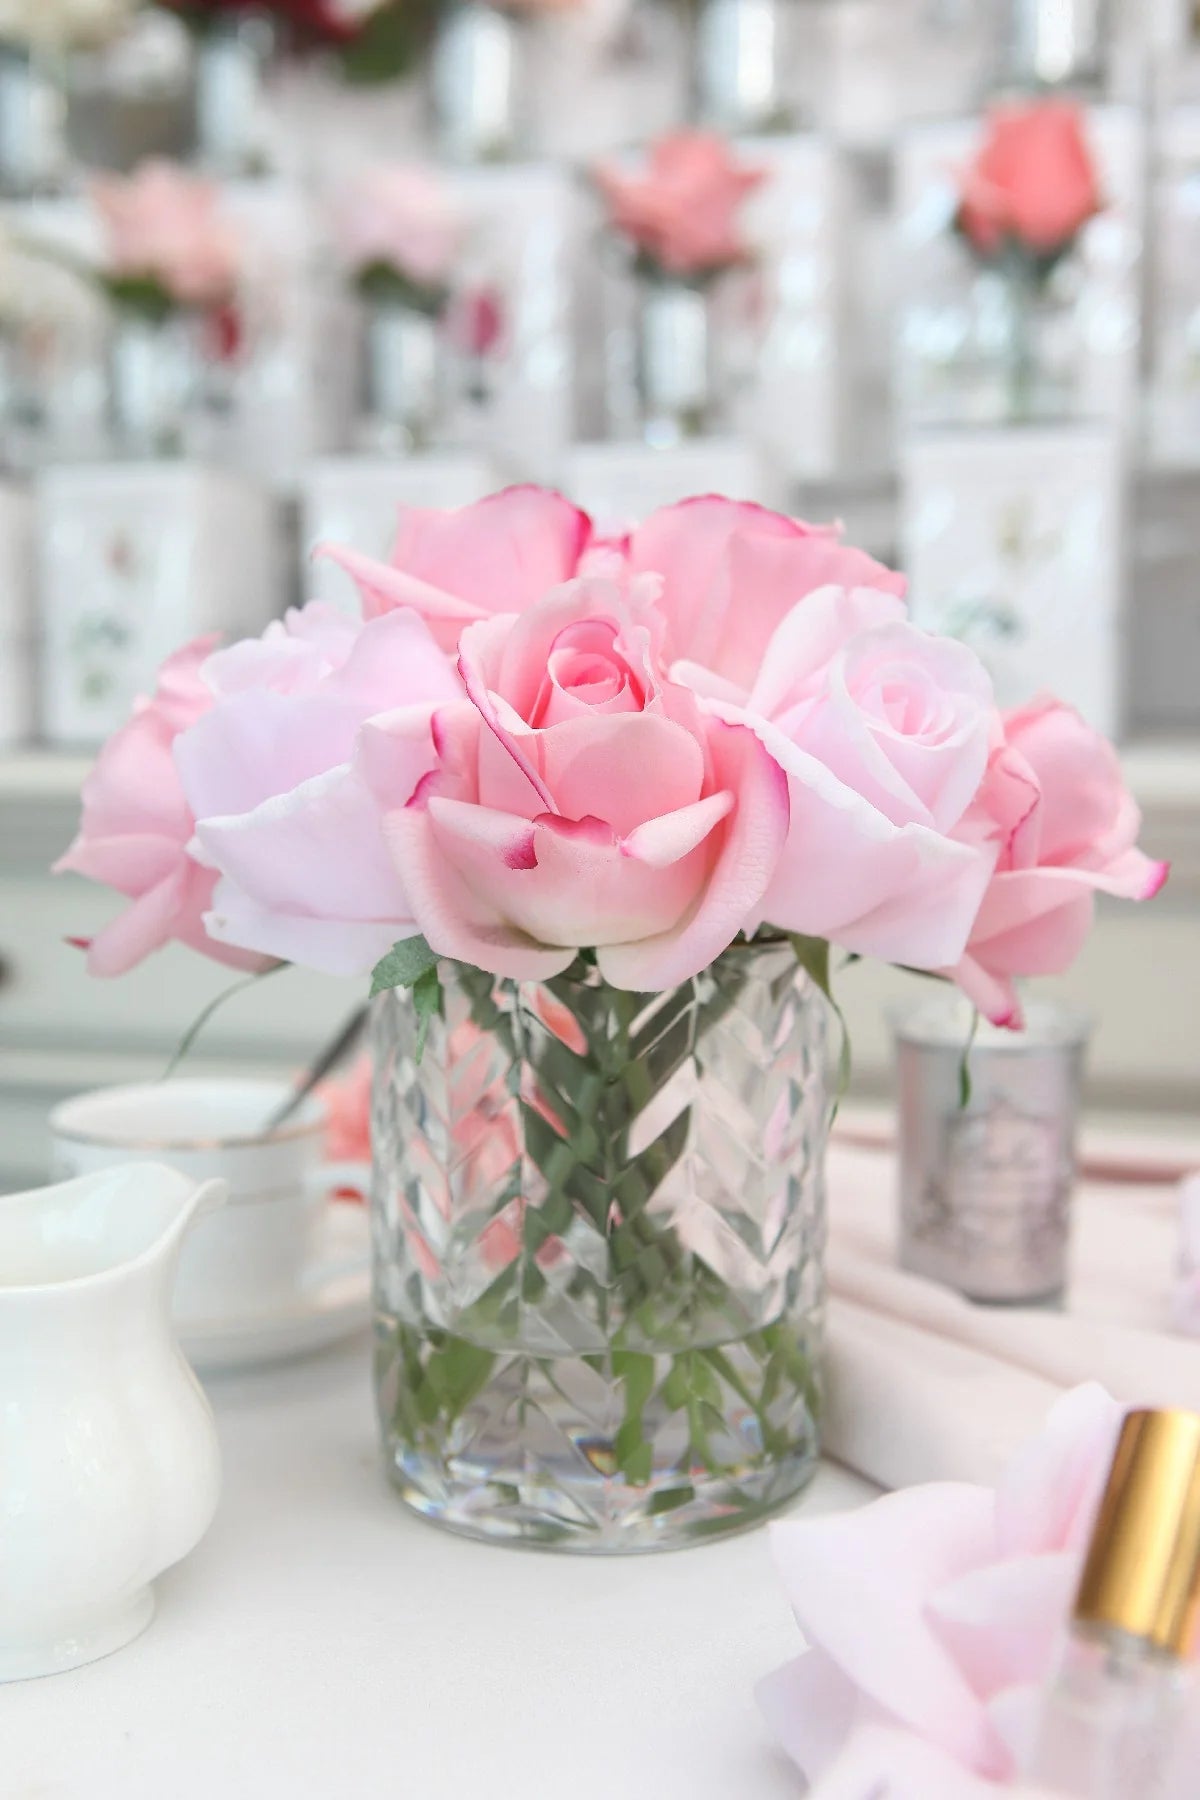 frontsicht auf mixed rosa rosen auf weiss gedecktem tisch.